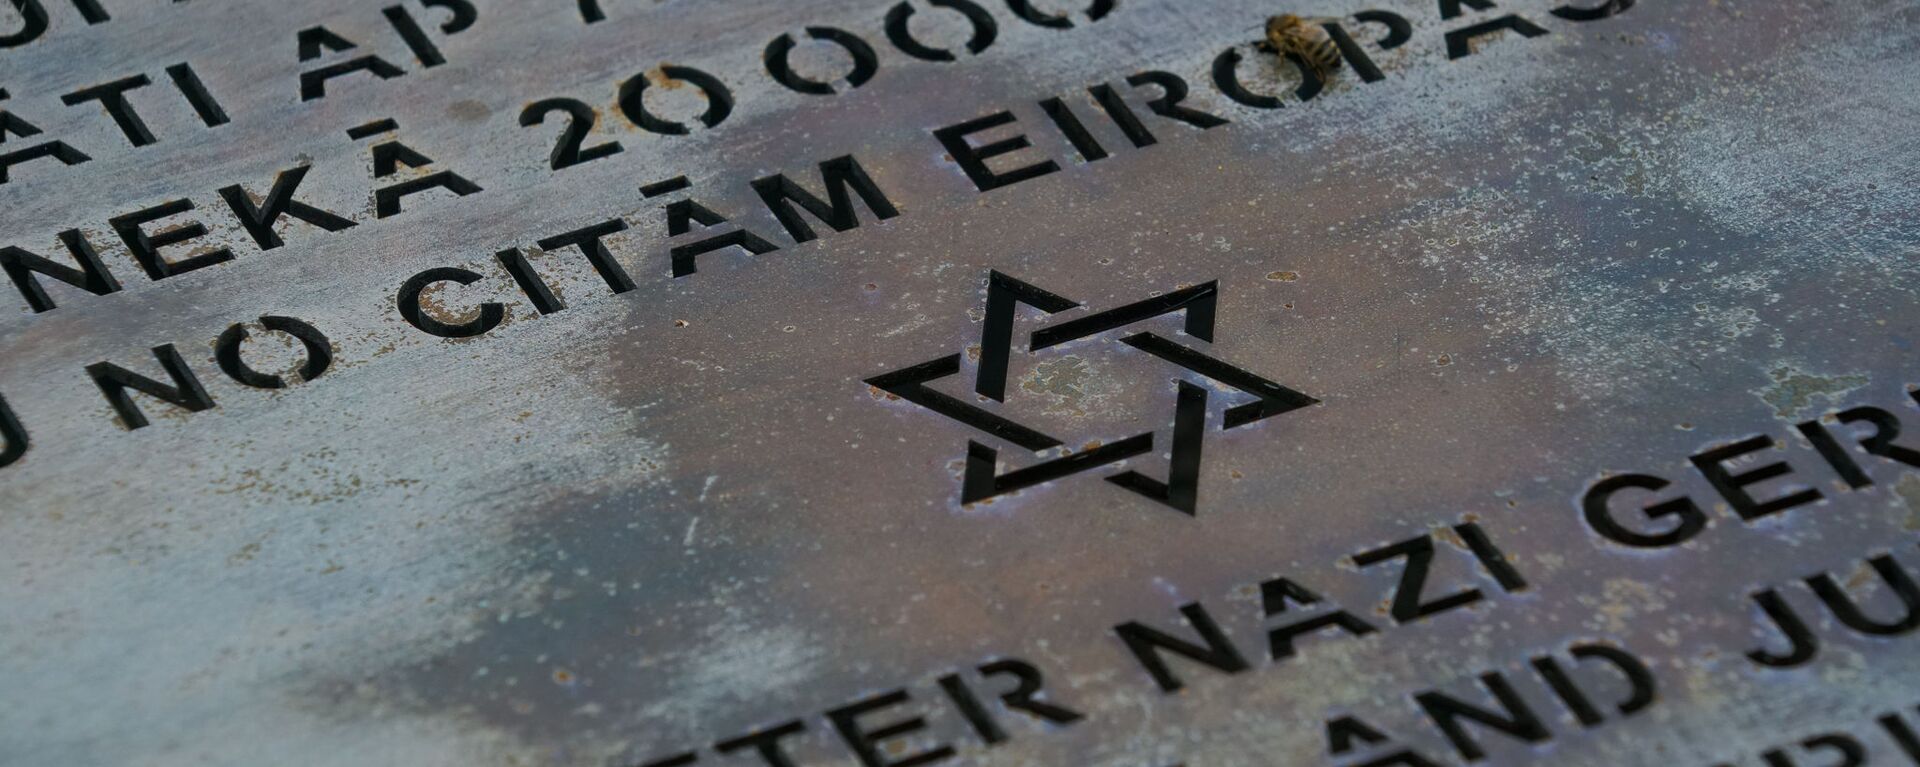 Памятный знак у стен сгоревшей Рижской хоральной синагоги - Sputnik Латвия, 1920, 12.04.2021